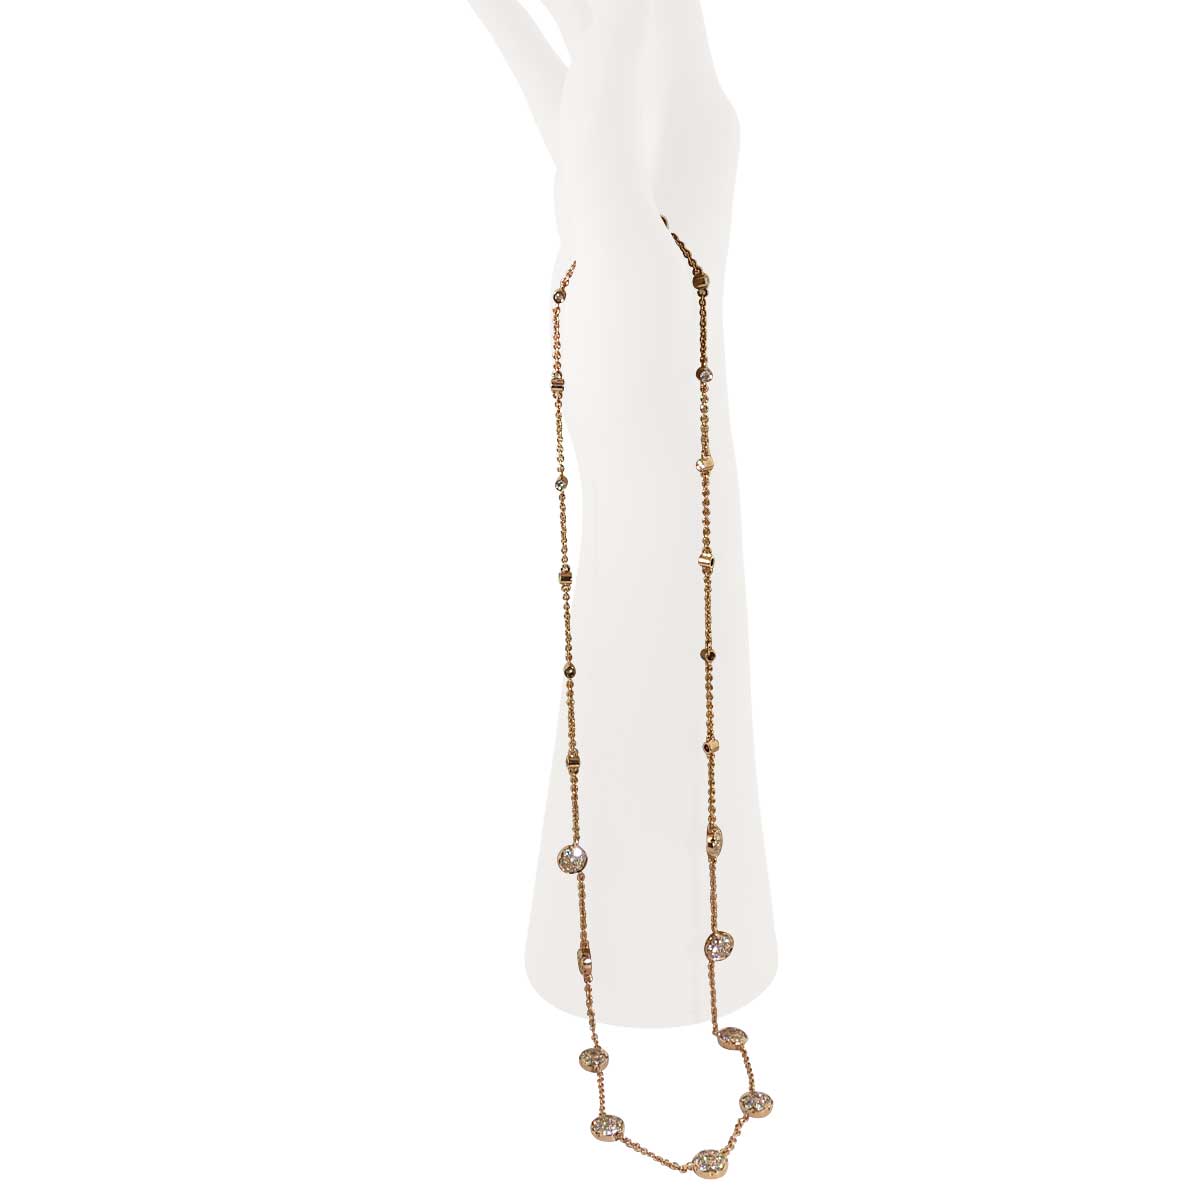 Brillant-Halskette  mit 75 Brillanten 2,44ct in 14 kt Rosegold 